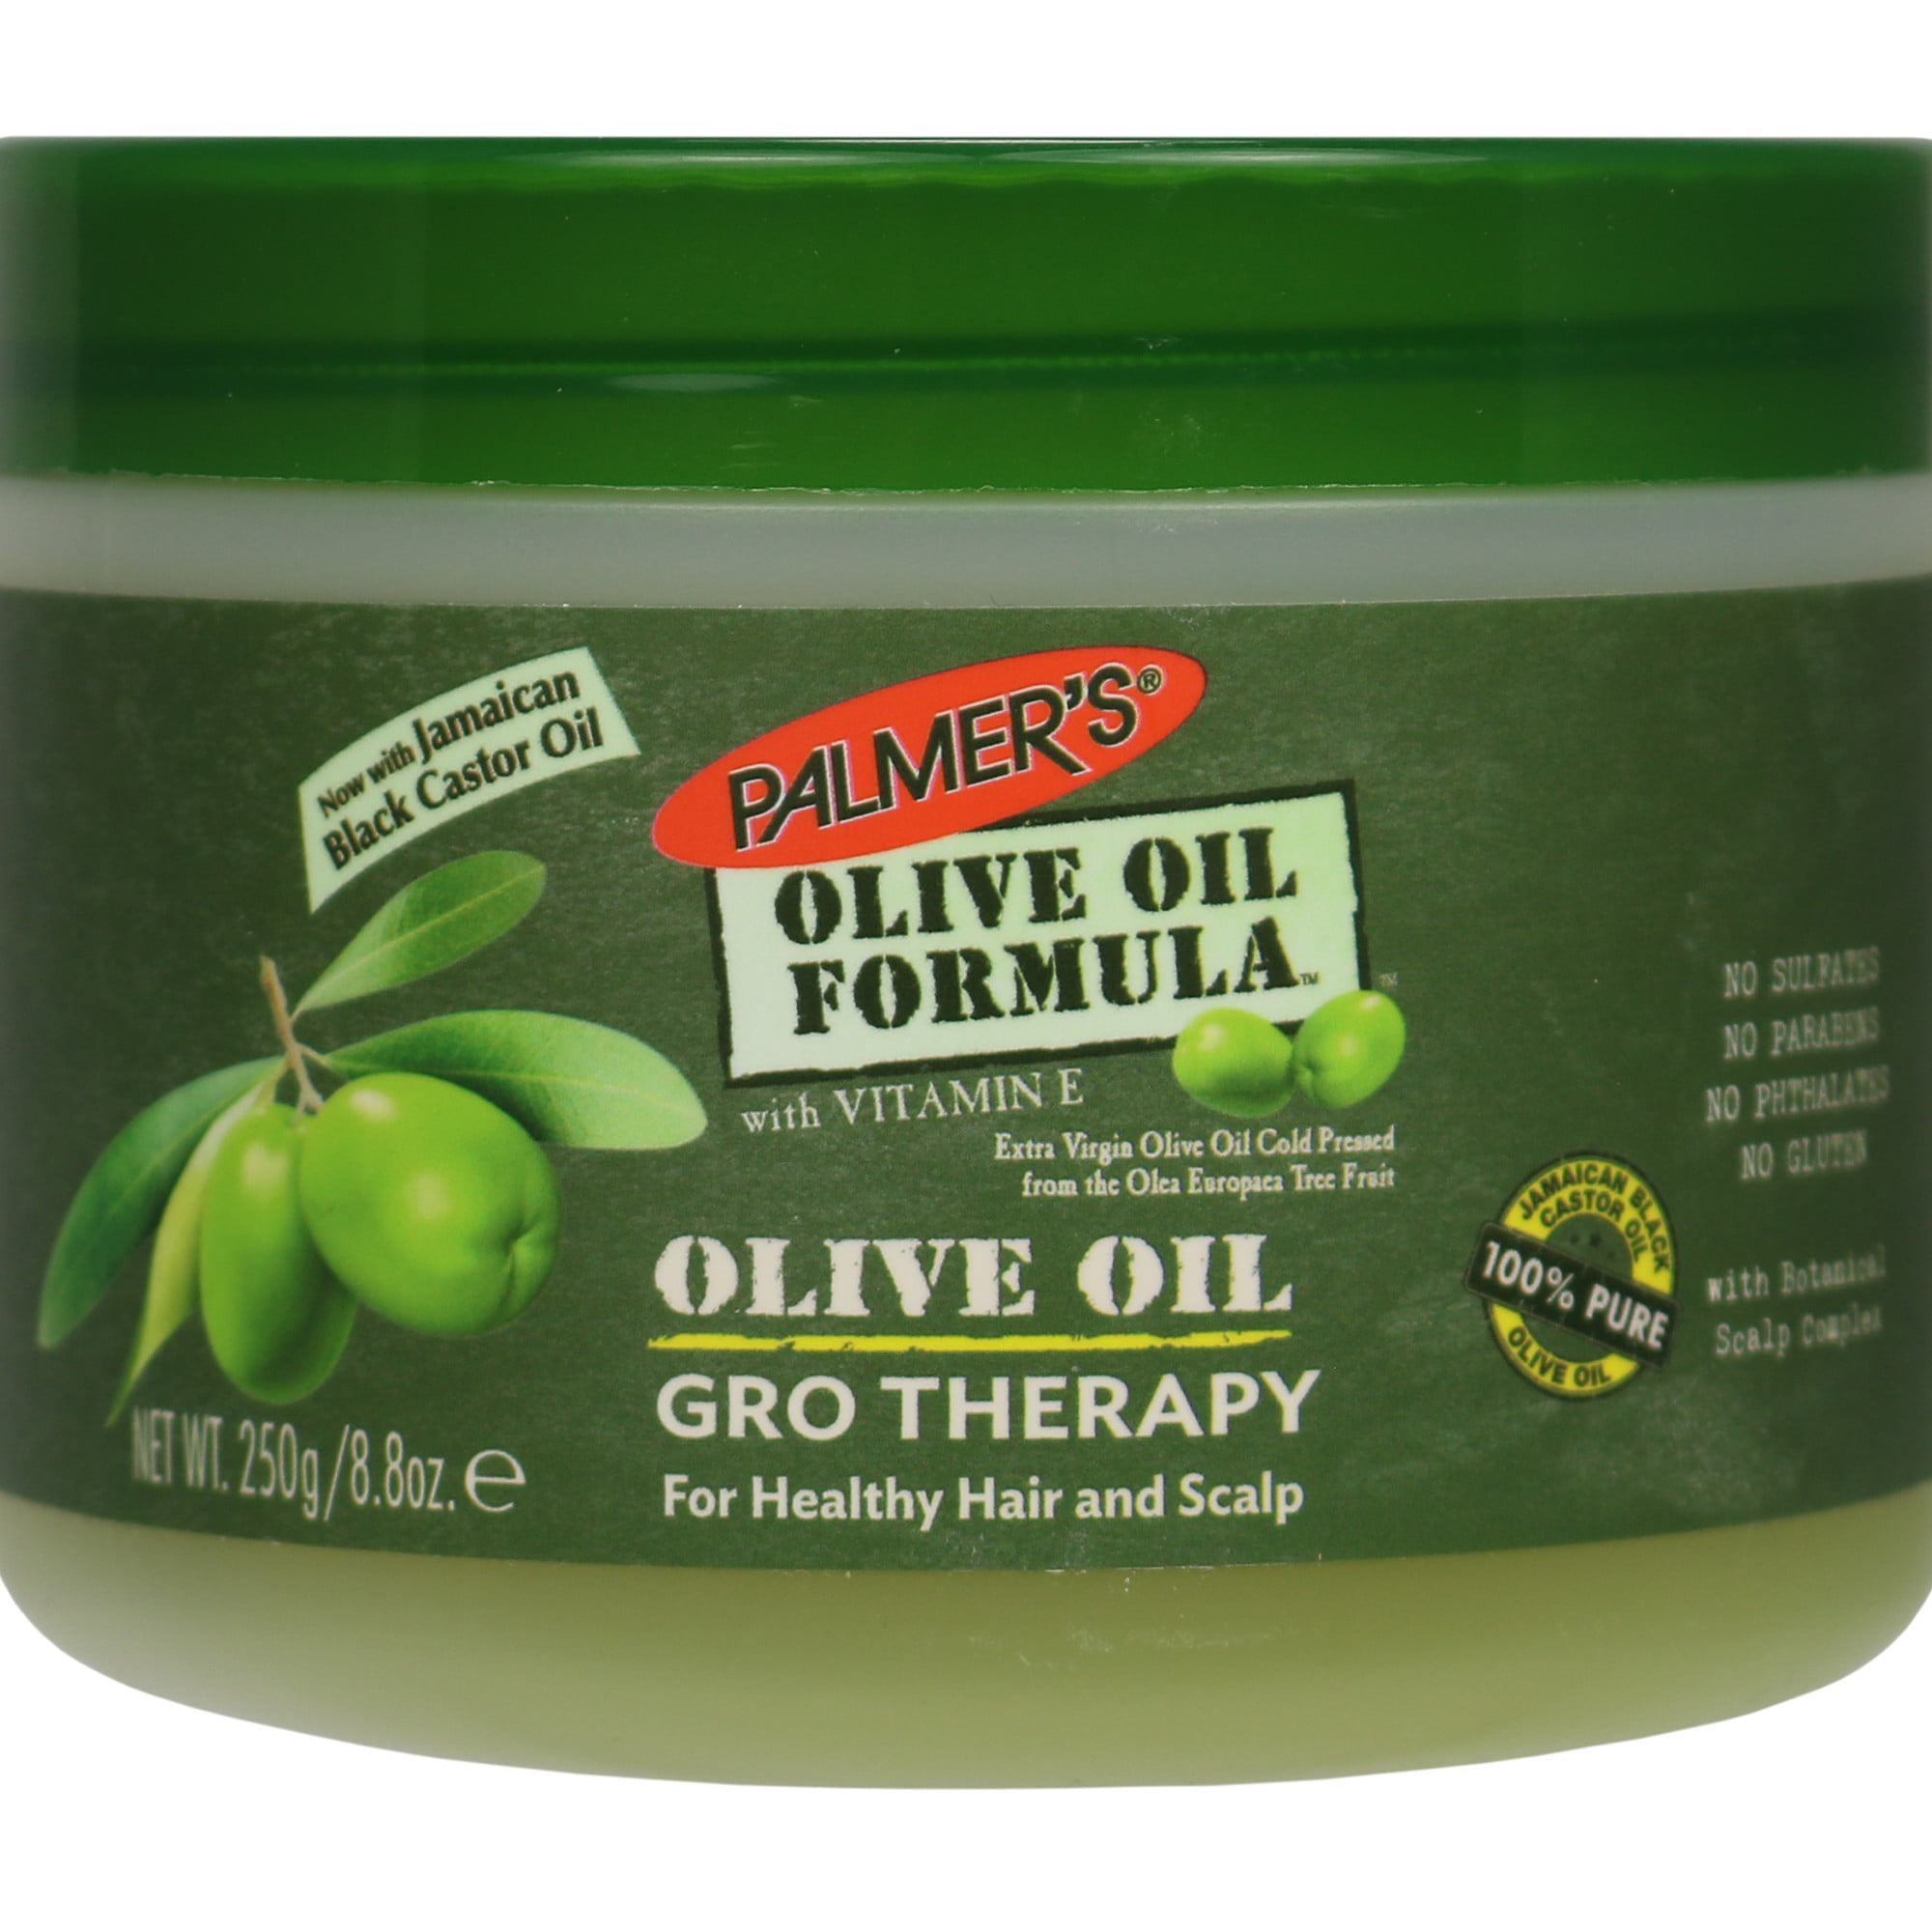 Olive oil hair oil